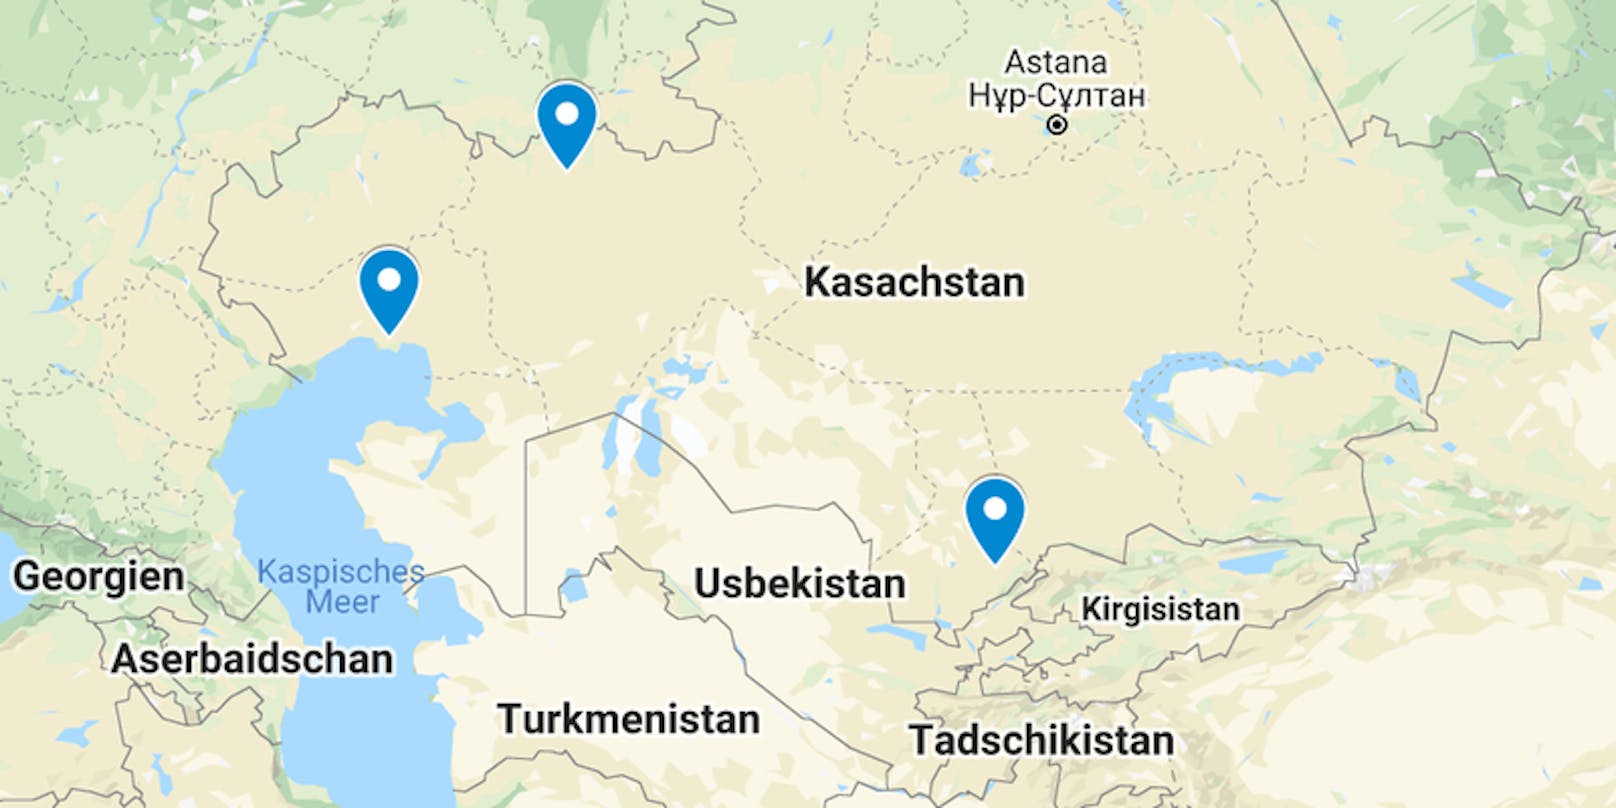 Laut dem Bericht besonders betroffen sind die Regionen Atyrau, Aktobe und Schymkent.